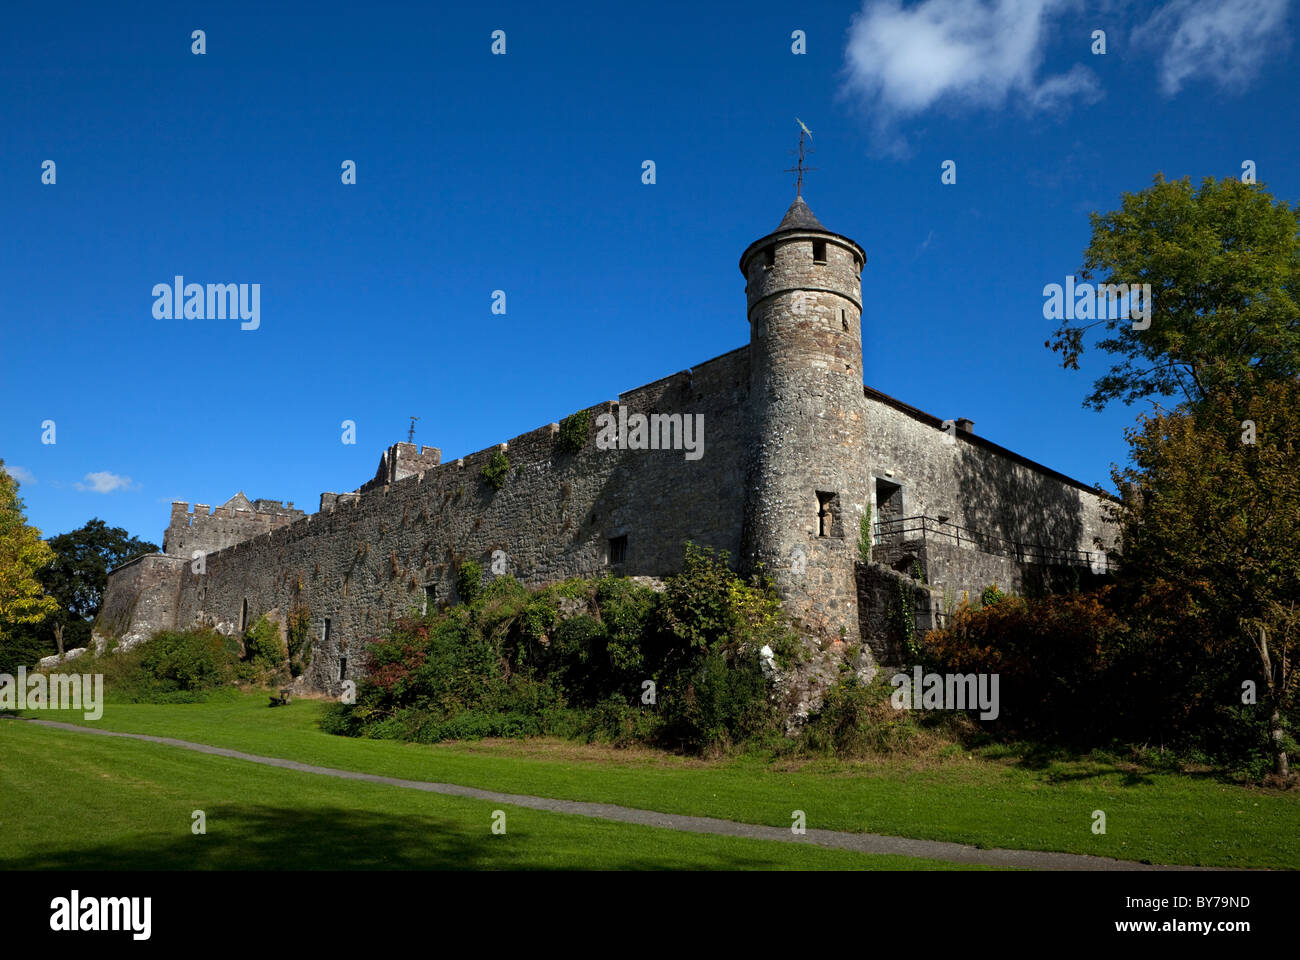 Caher château construit construit en 1142 par Conor O'Brien, Prince de Thomond, de la famille Butler, Caher, comté de Tipperary, Irlande Banque D'Images